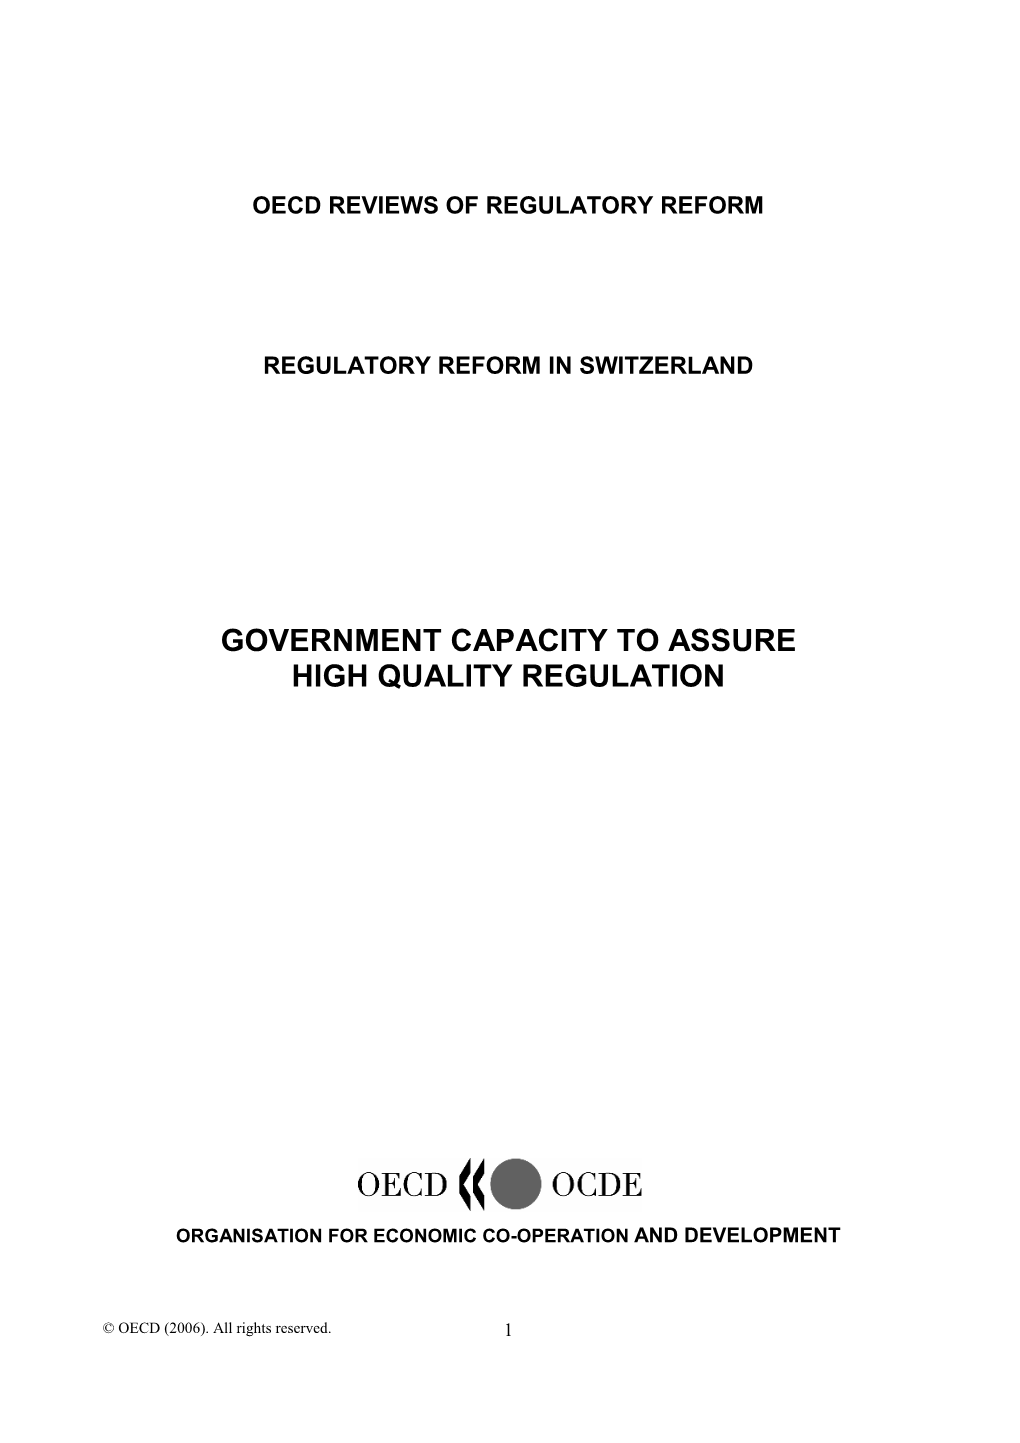 Government Capacity to Assure High Quality Regulation